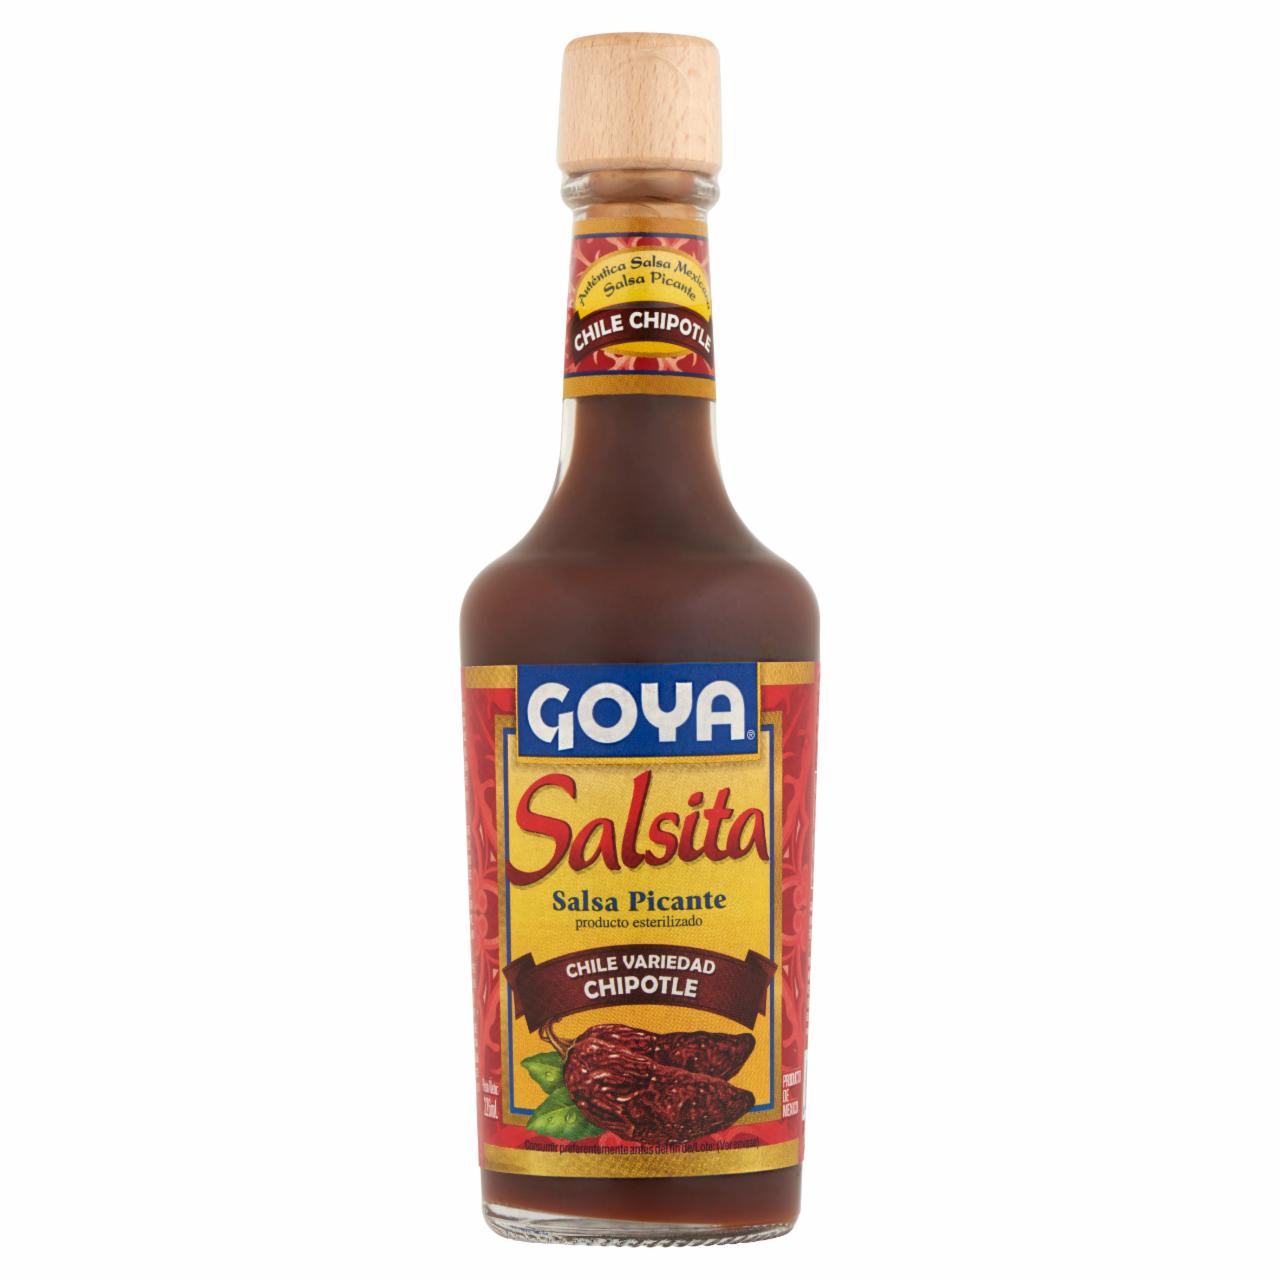 Képek - Goya Salsita fűszeres csípős szósz Chipotle chili paprikából 226 ml